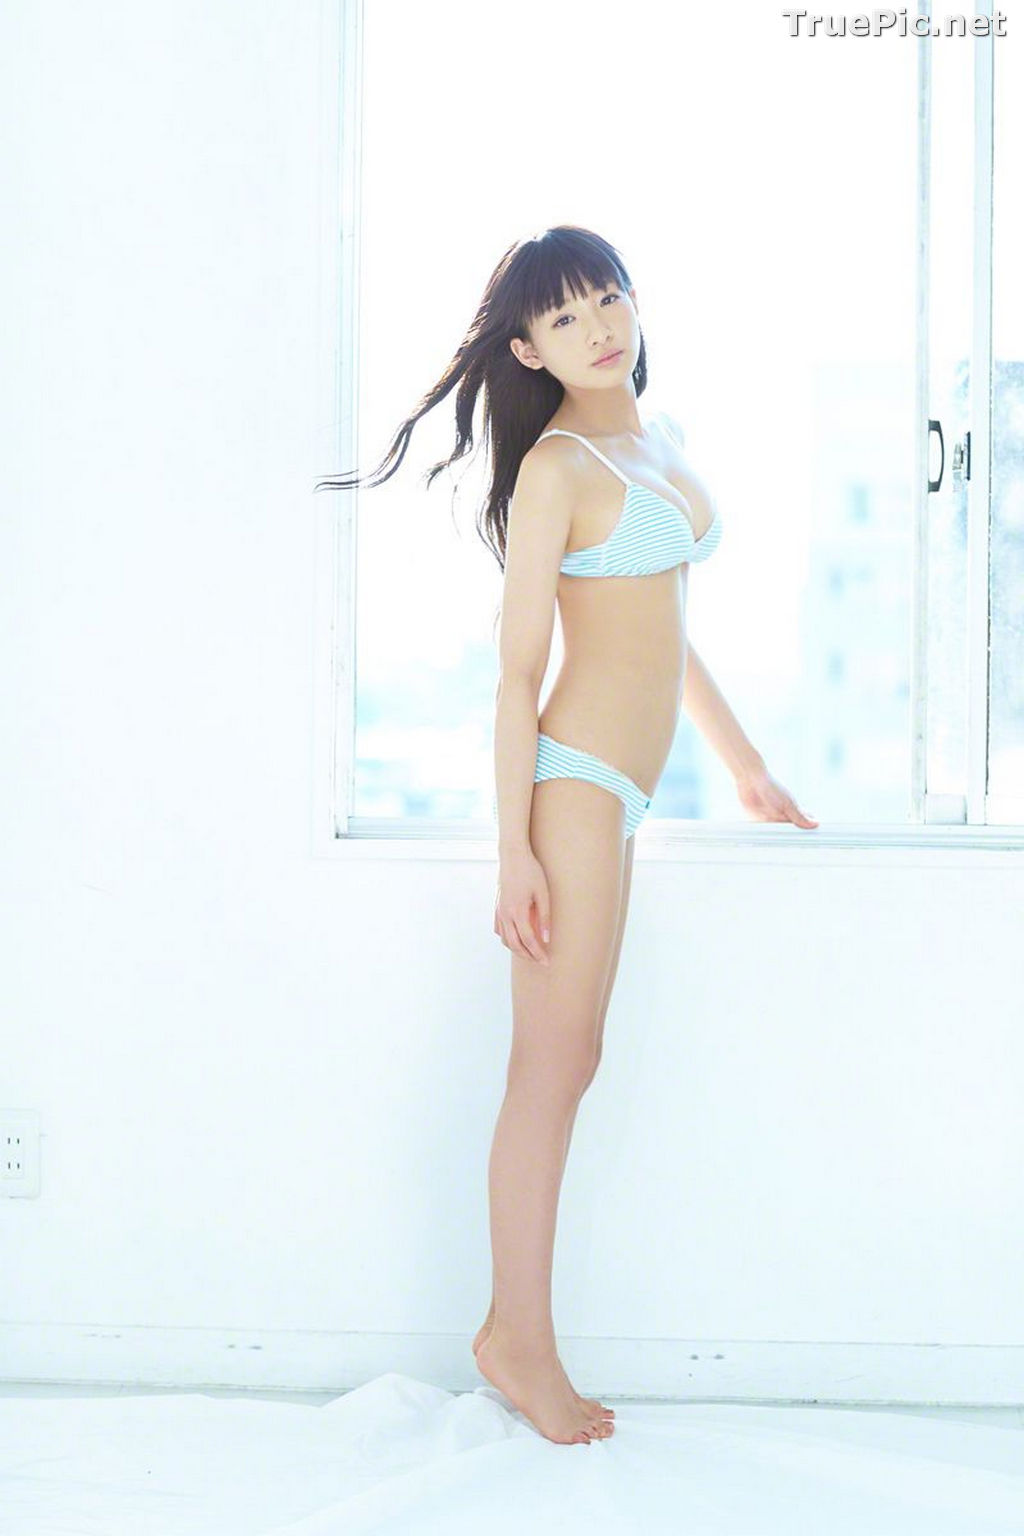 Image Wanibooks No.133 - Japanese Model and Singer - Hikari Shiina - TruePic.net - Picture-113